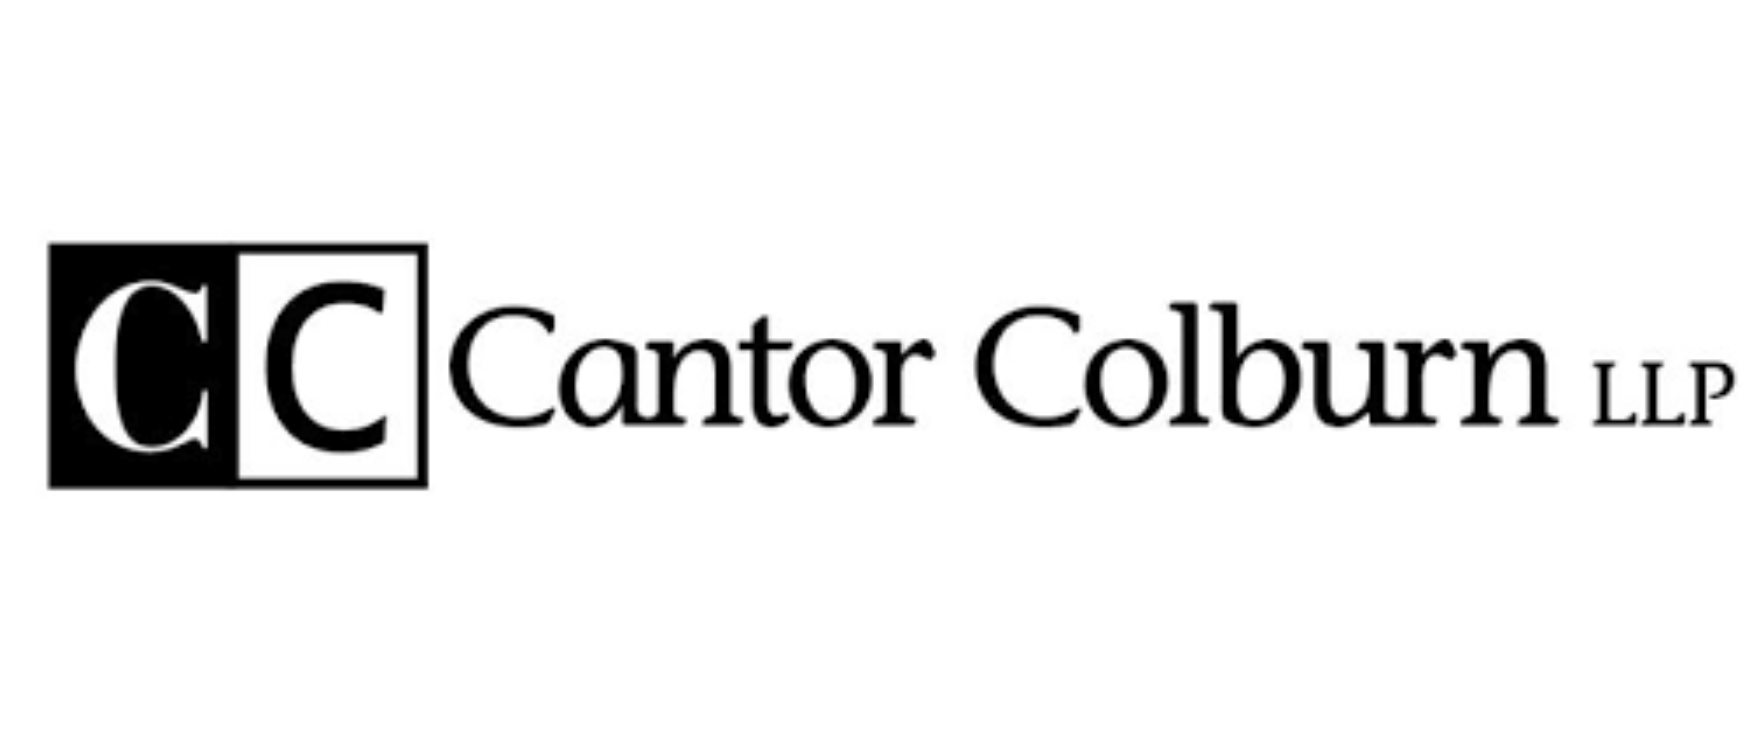 Sponsor logo - Cantor Colburn